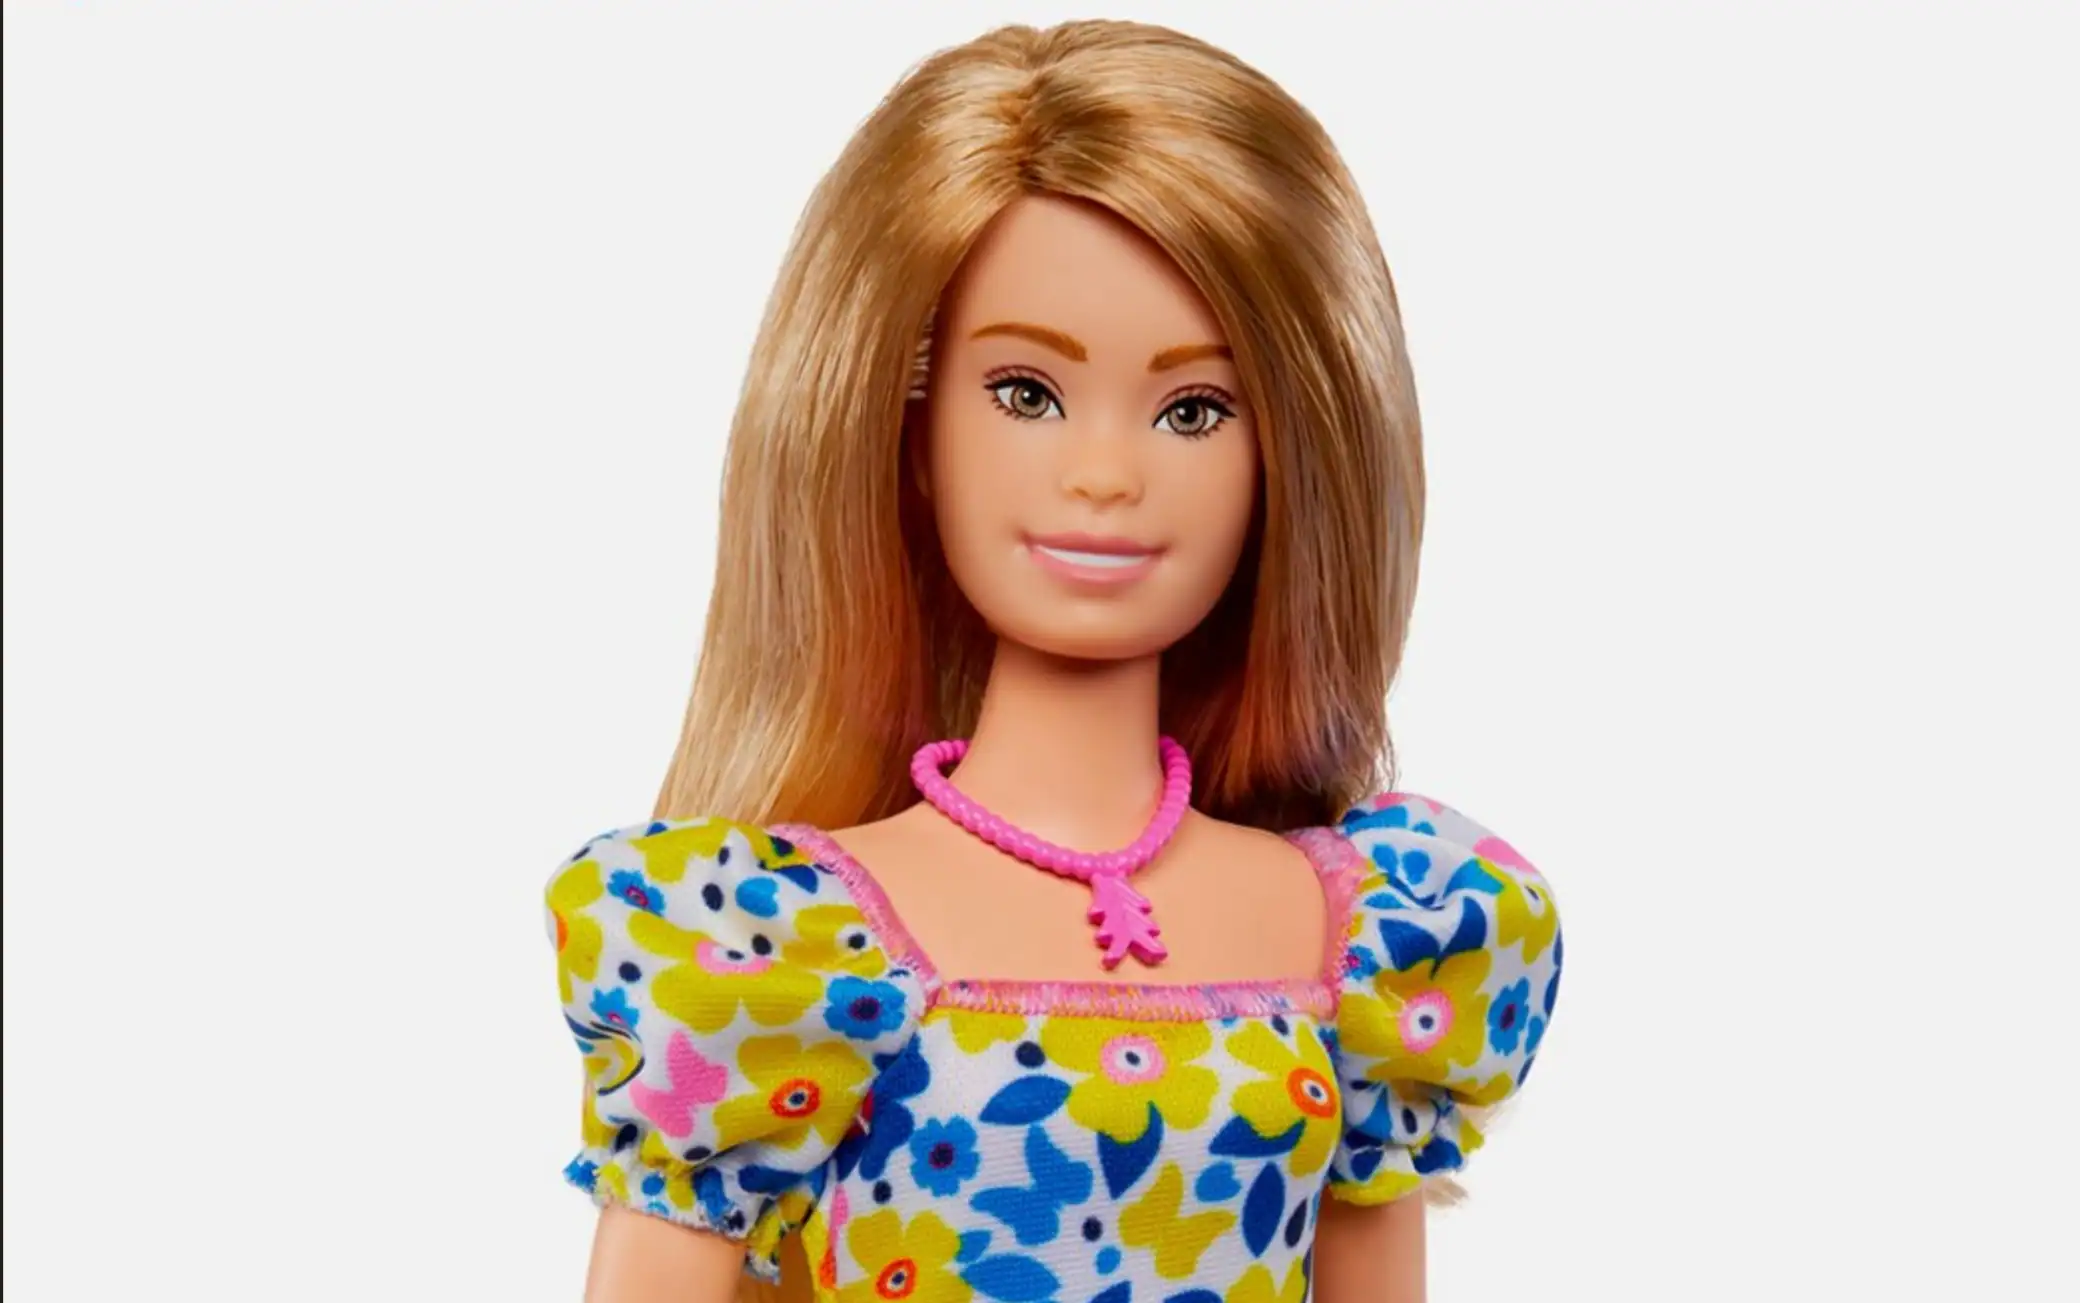 La Barbie Down, ecco l'ultima bambola 'inclusiva' lanciata sul mercato